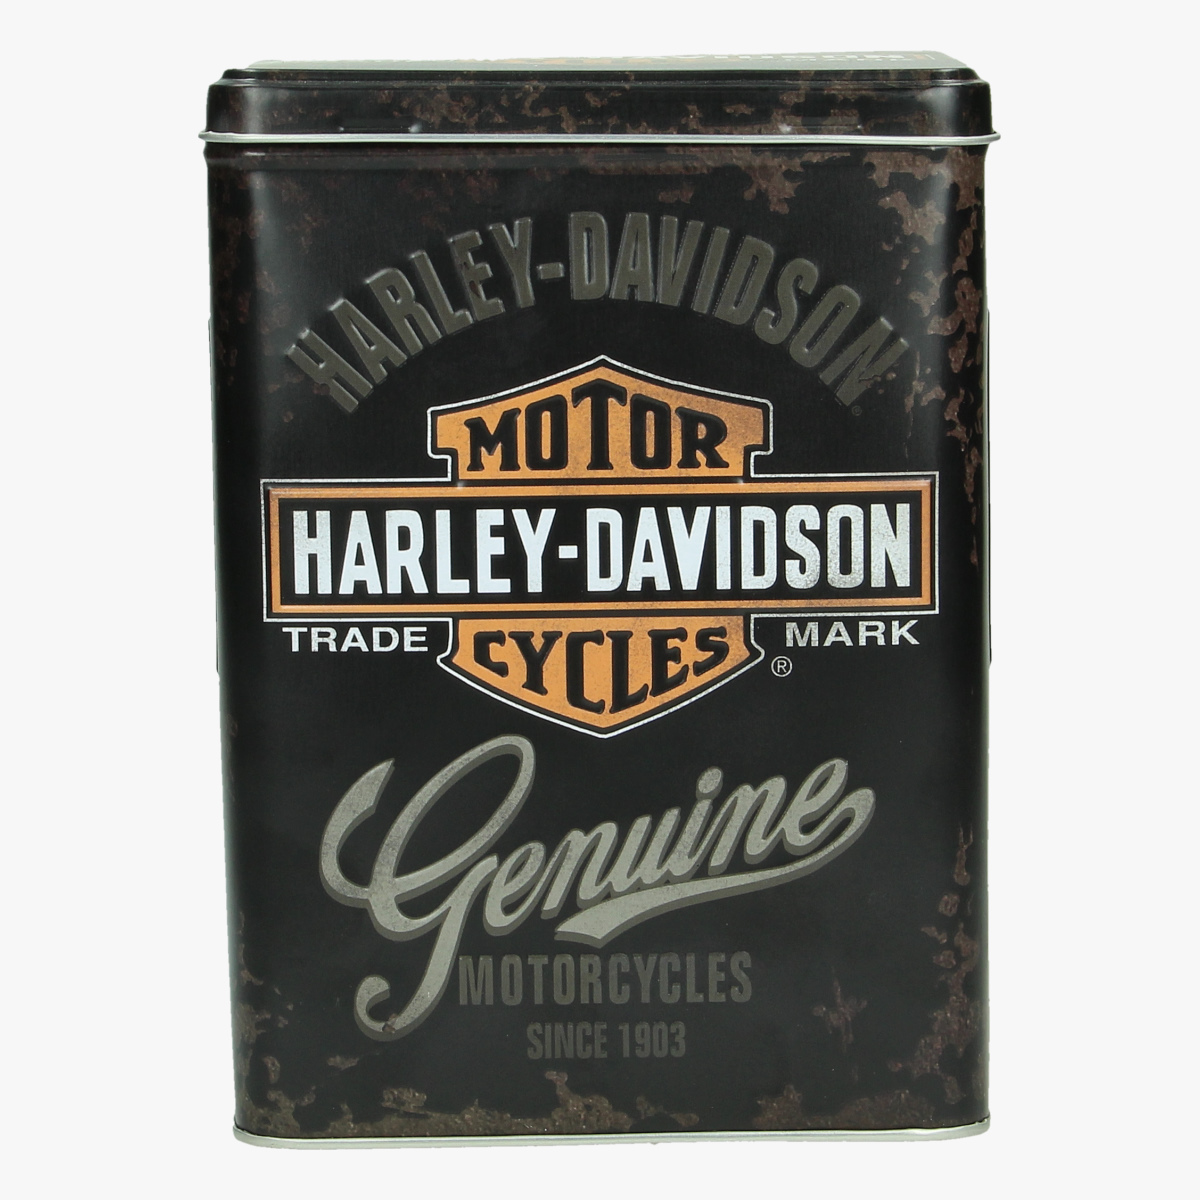 Afbeeldingen van blikken doos harley- davidson genuine motorcycles since 1903 repro